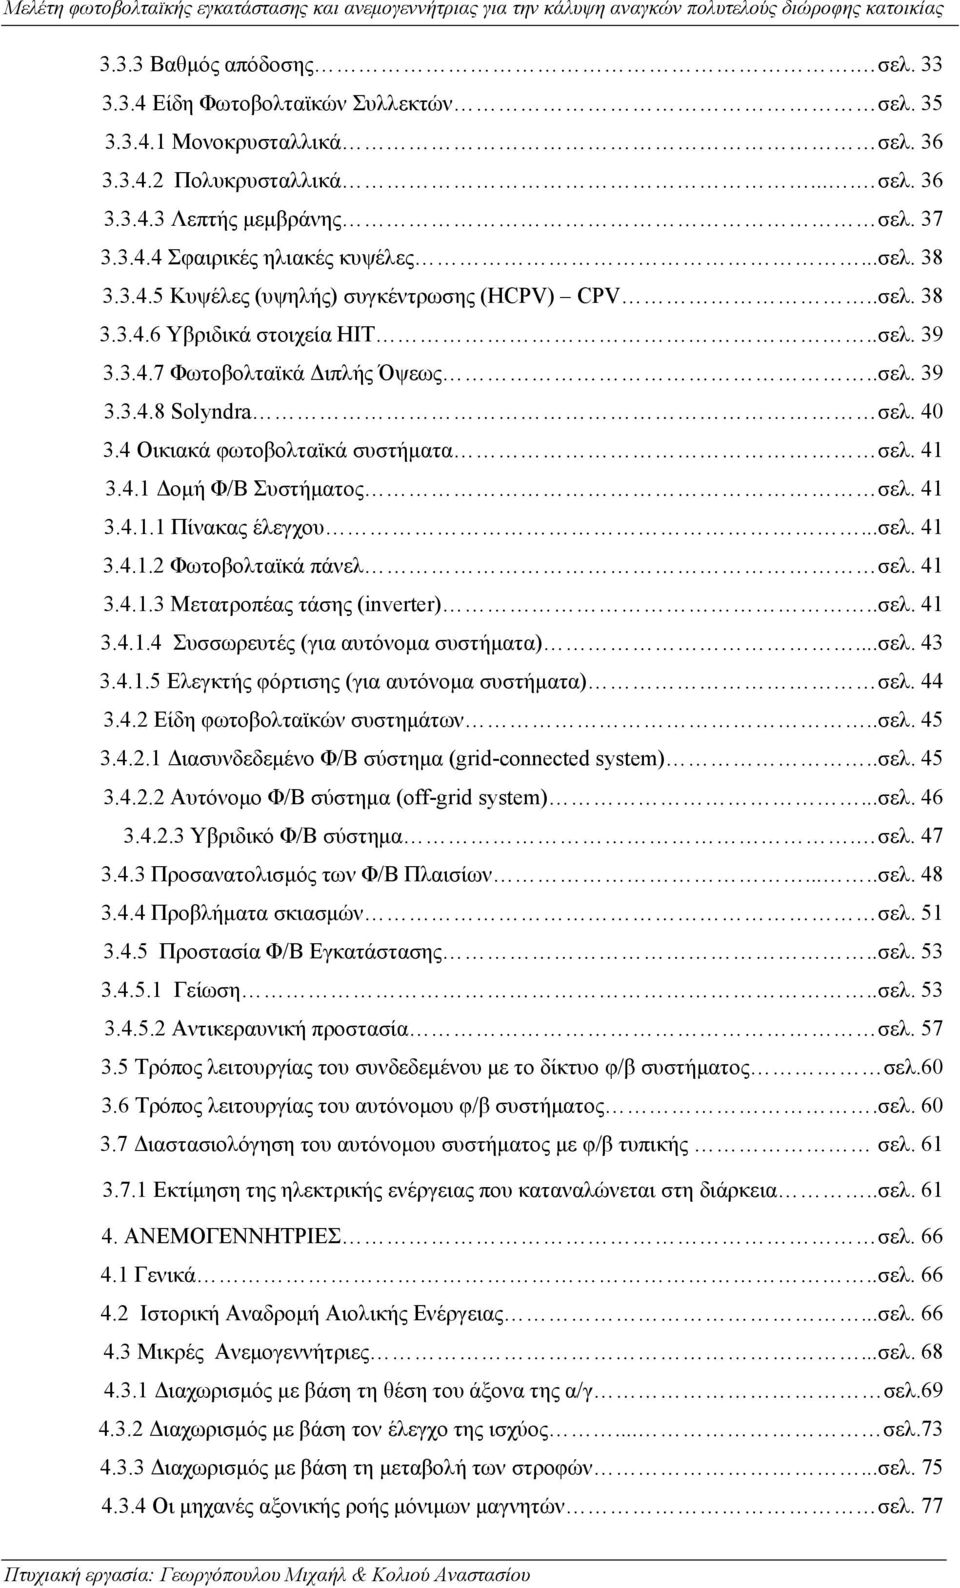 4 Οικιακά φωτοβολταϊκά συστήματα σελ. 41 3.4.1 Δομή Φ/Β Συστήματος σελ. 41 3.4.1.1 Πίνακας έλεγχου...σελ. 41 3.4.1.2 Φωτοβολταϊκά πάνελ σελ. 41 3.4.1.3 Μετατροπέας τάσης (inverter)..σελ. 41 3.4.1.4 Συσσωρευτές (για αυτόνομα συστήματα).